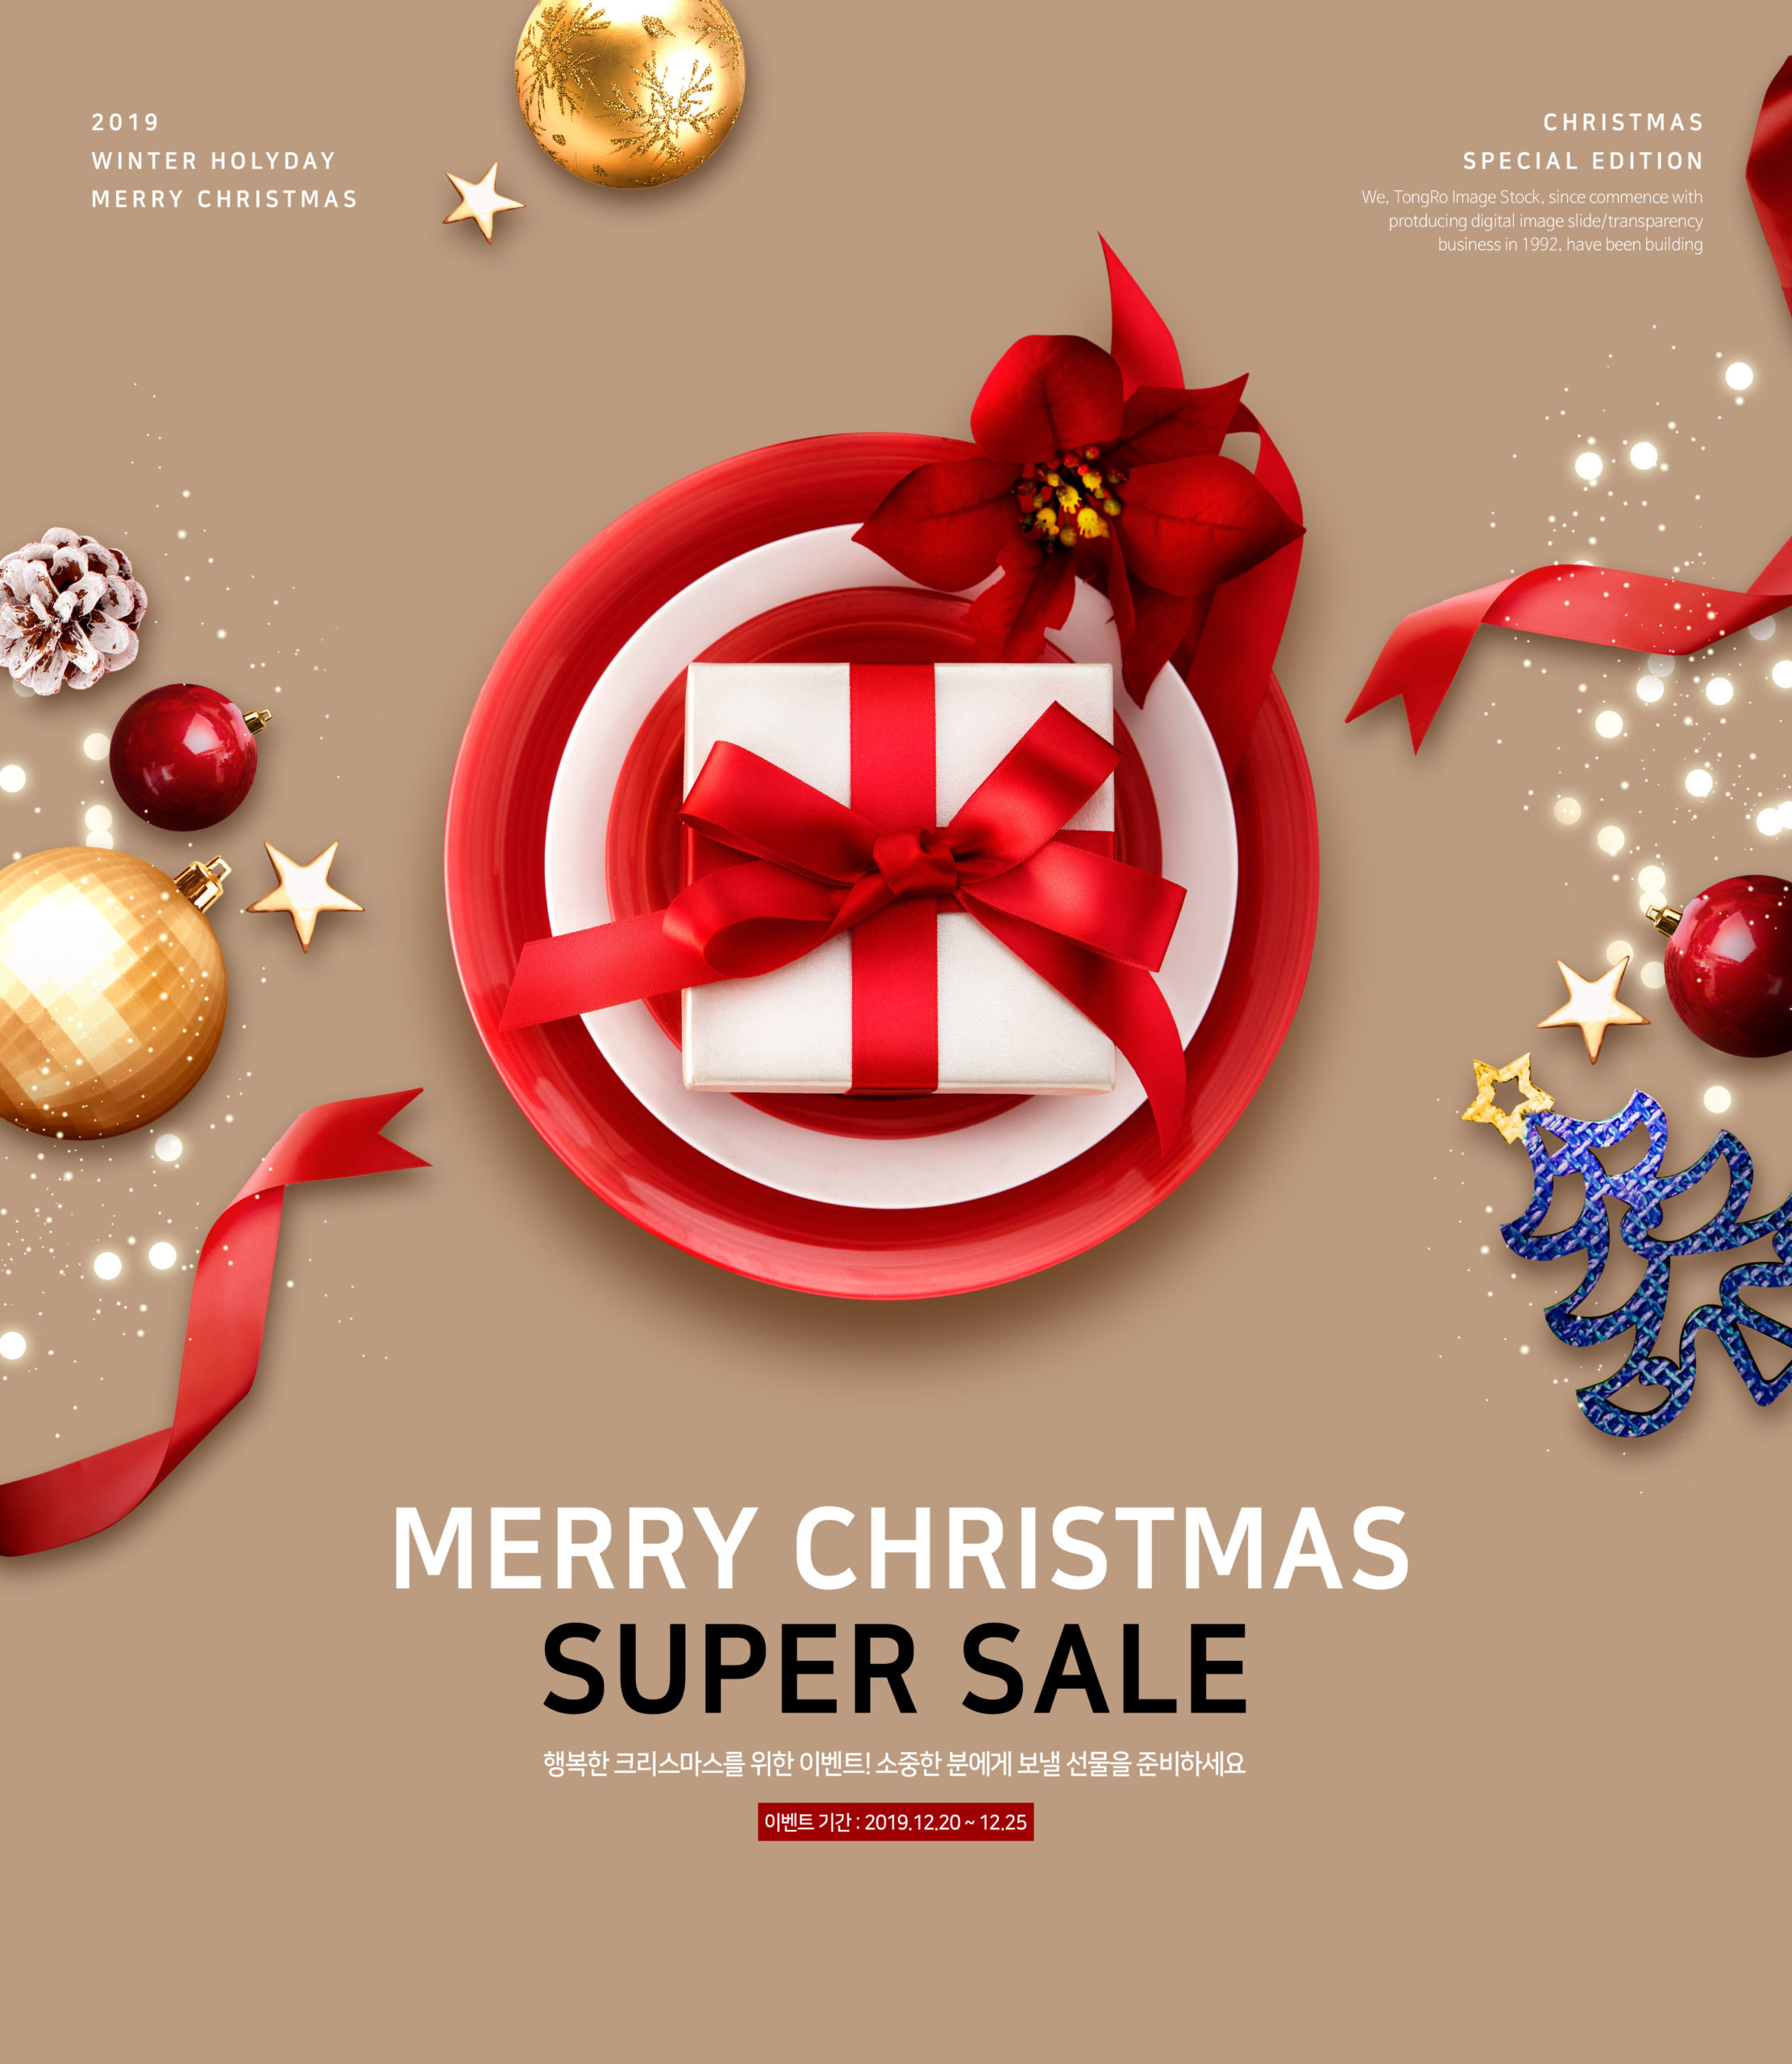 圣诞特别礼物折扣促销活动海报设计模板插图